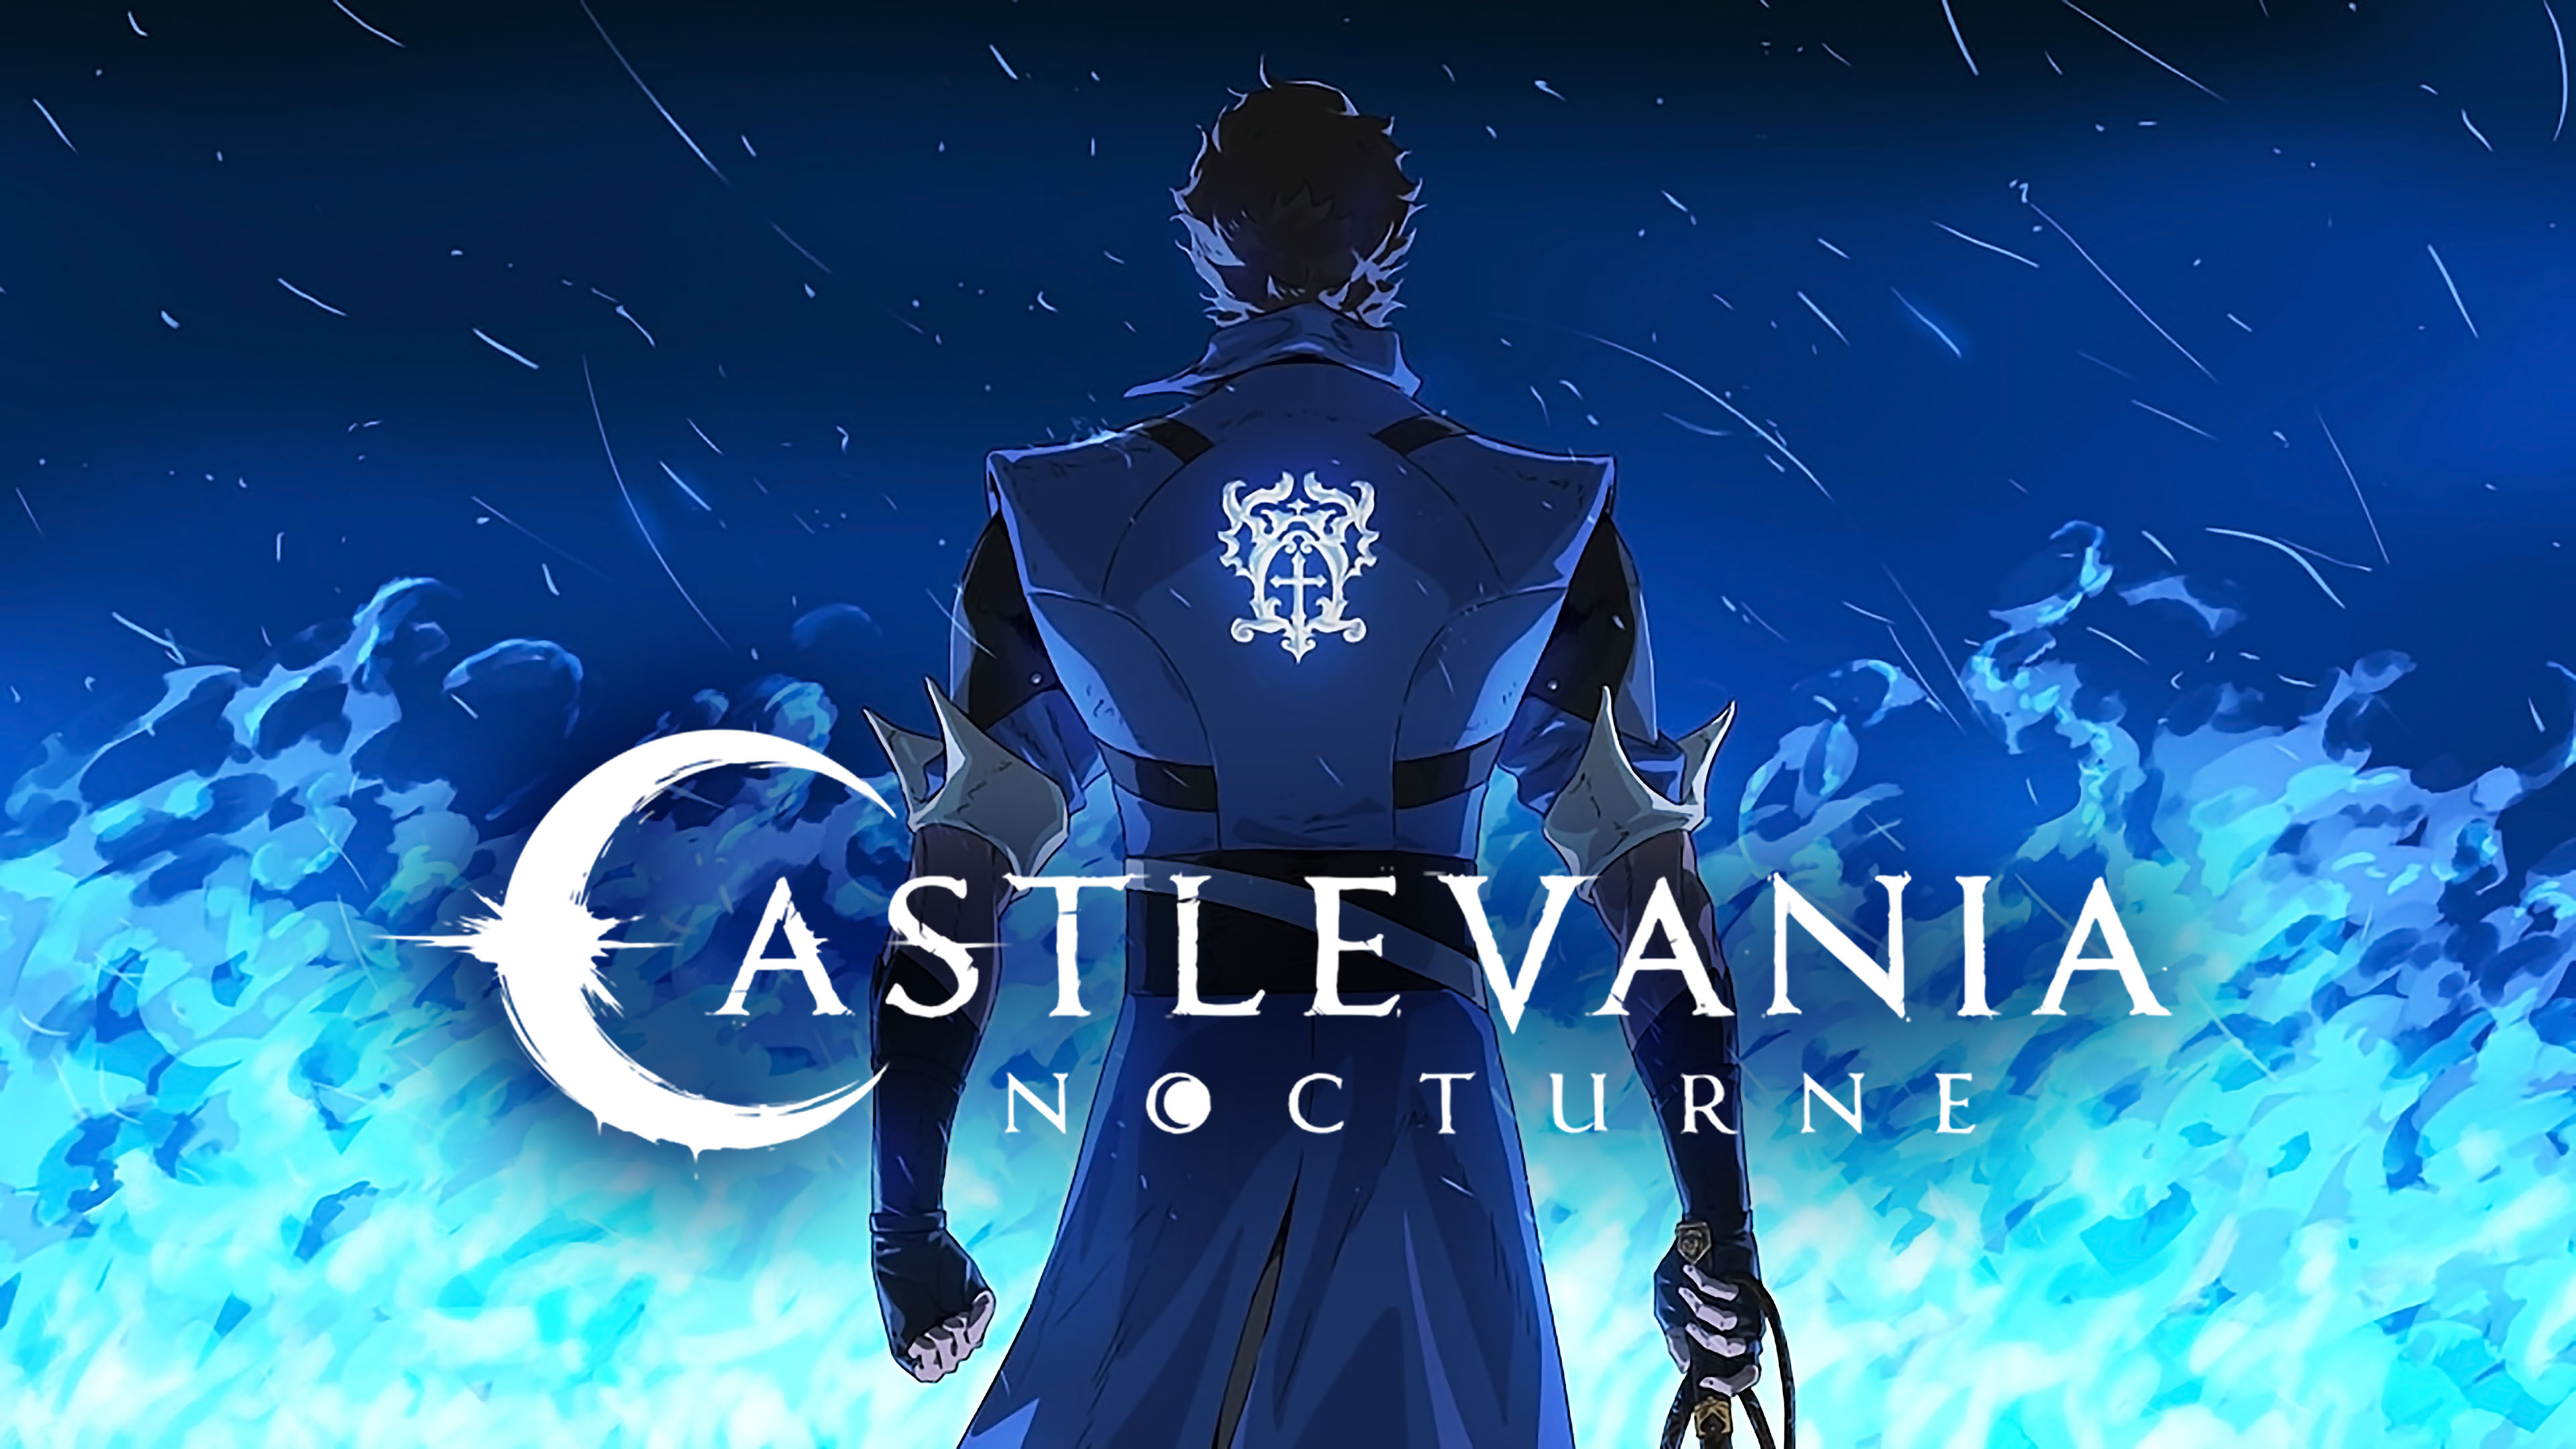 La seconda stagione di Castlevania: Nocturne è già in fase di sviluppo